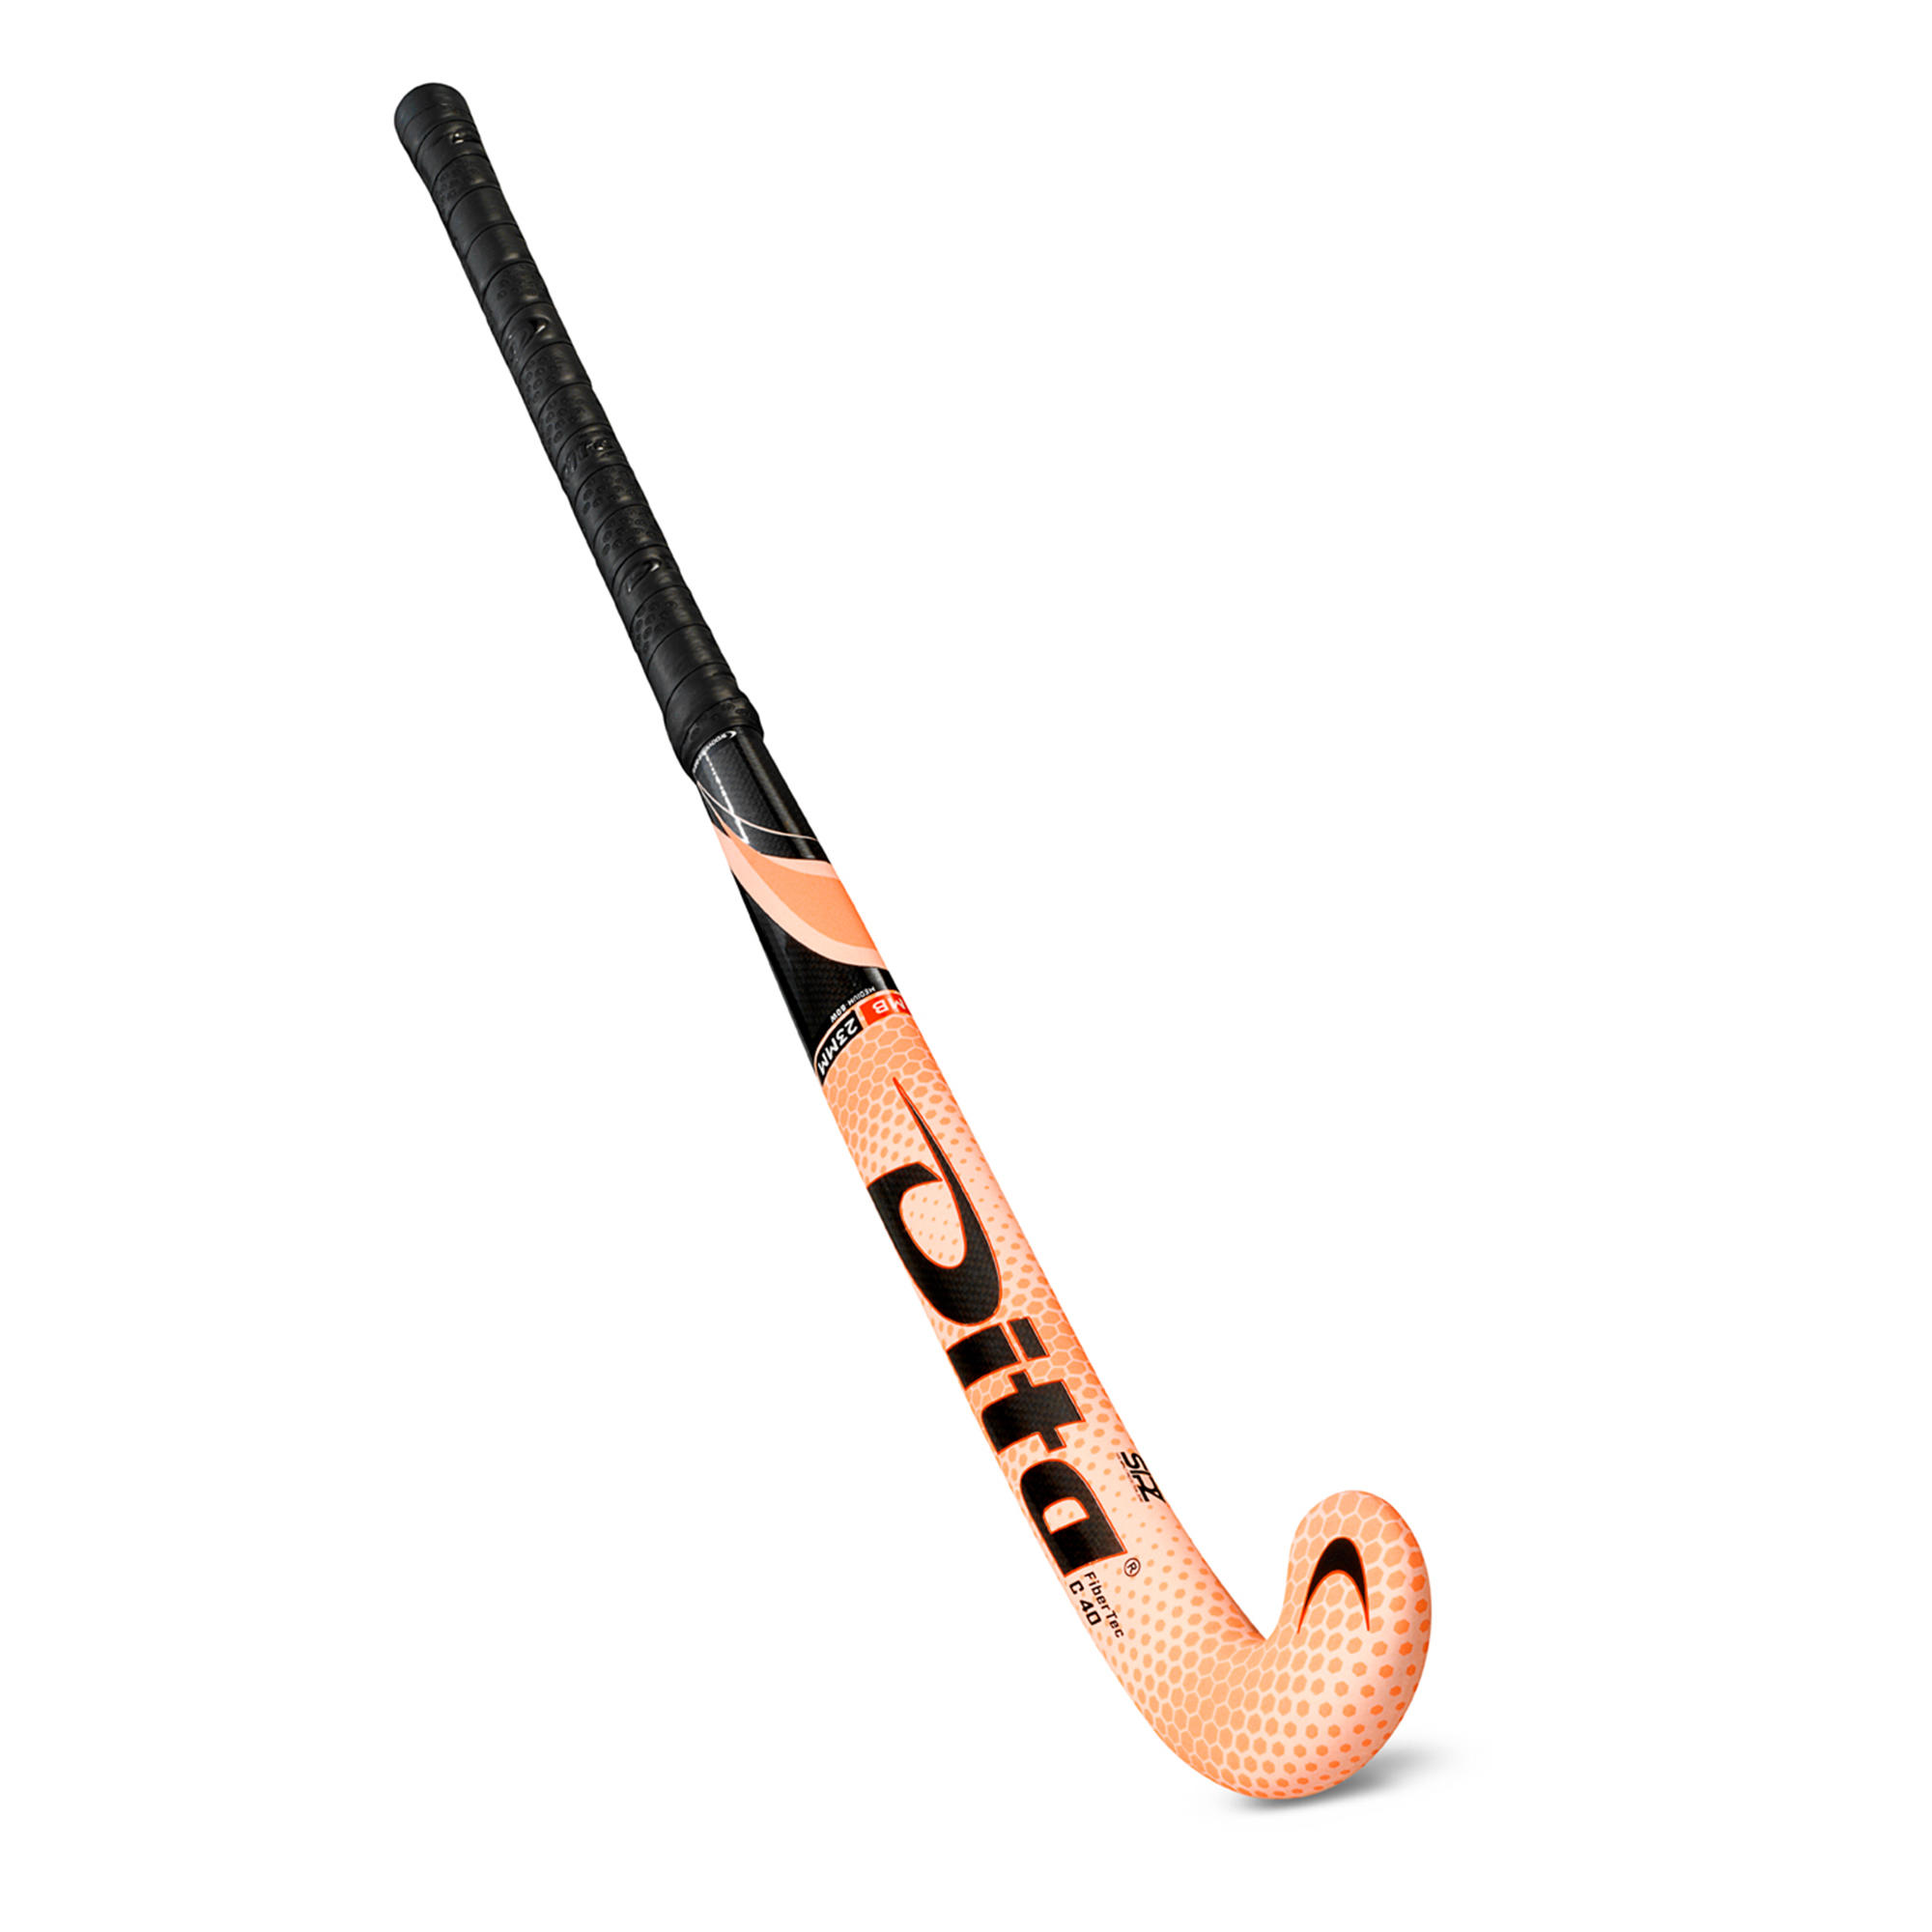 DITA Intermediate 40% Carbon Mid Bow Field Hockey Stick FiberTecC40 - Pink